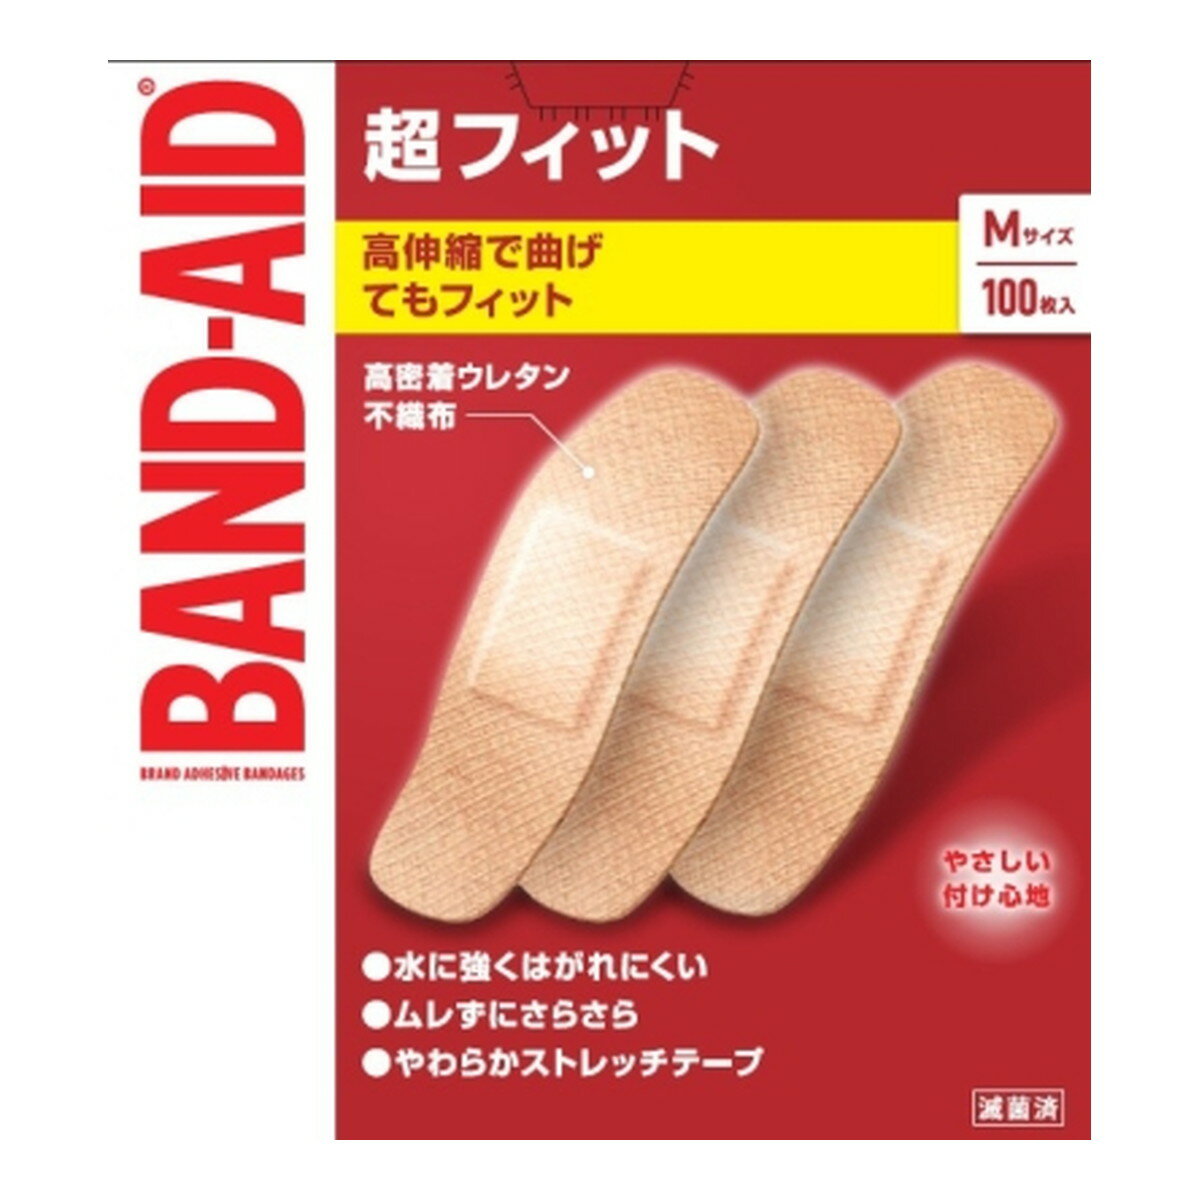 【送料込・まとめ買い×8個セット】BAND-AID バンドエイド 超フィット Mサイズ 100枚入